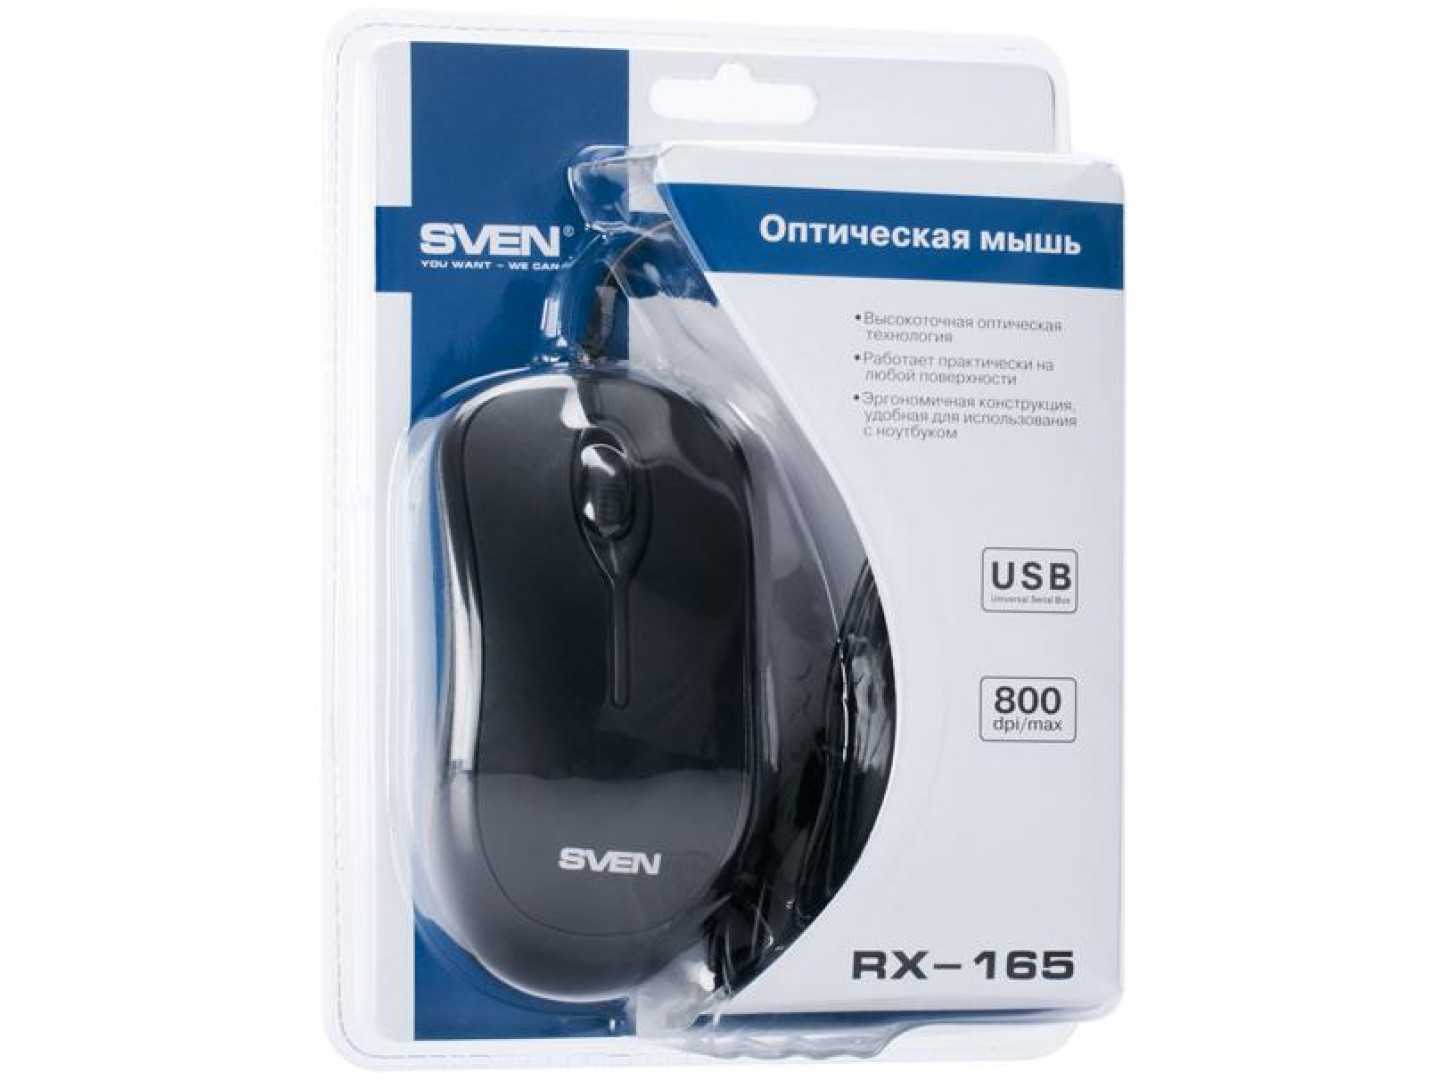 Sven lx-630 wireless black usb купить по акционной цене , отзывы и обзоры.